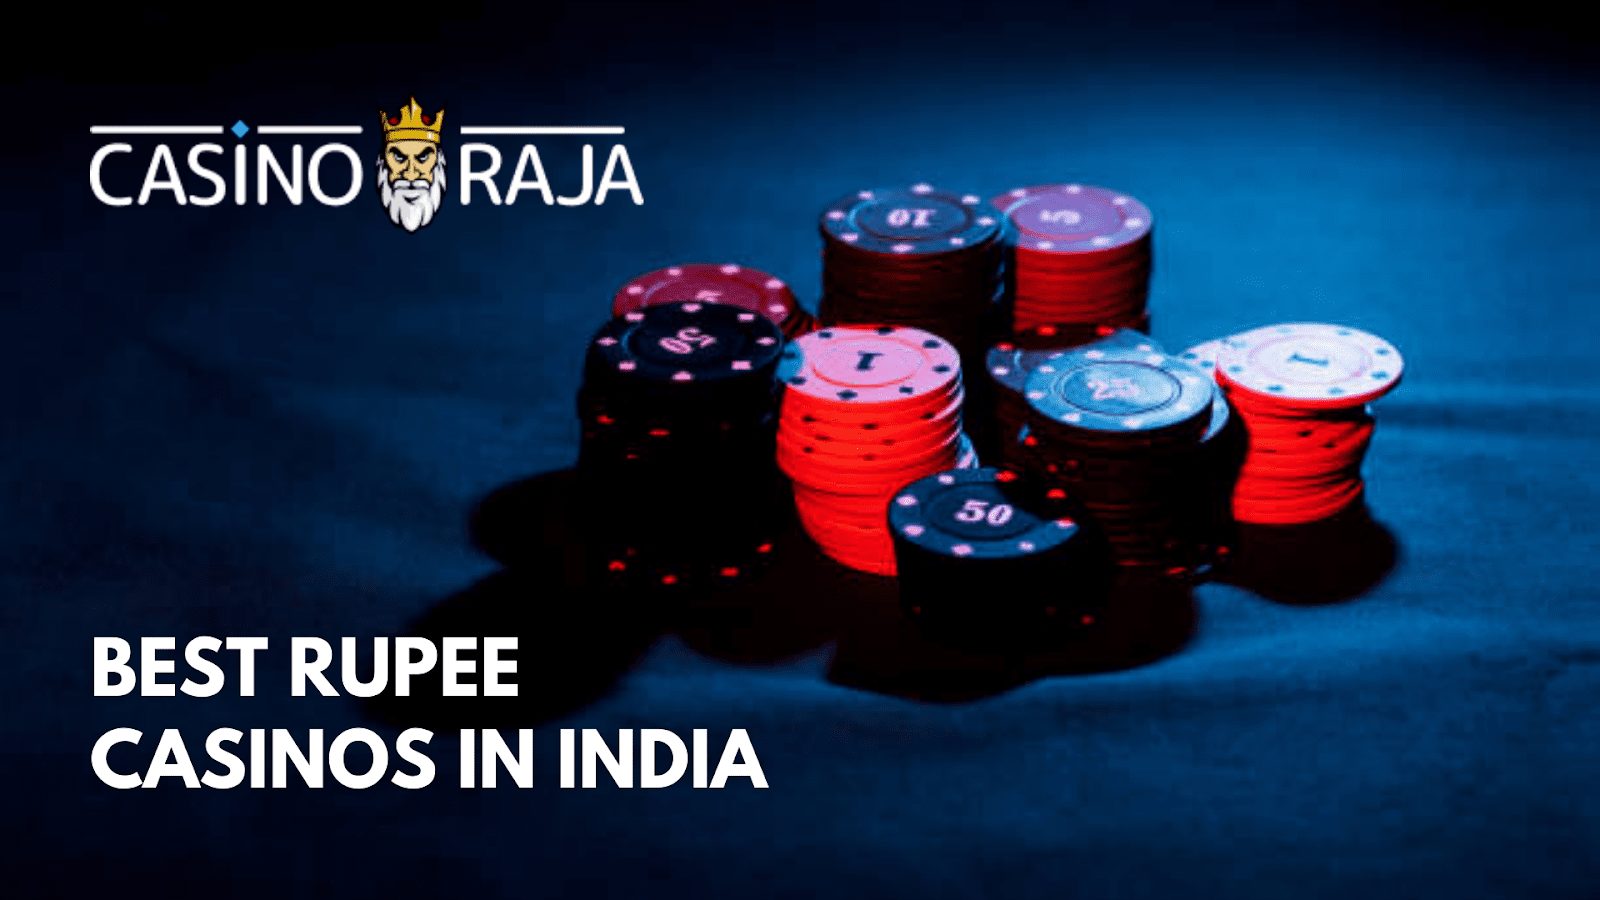 Best Rupee Casinos in India | CasinoRaja.in Review